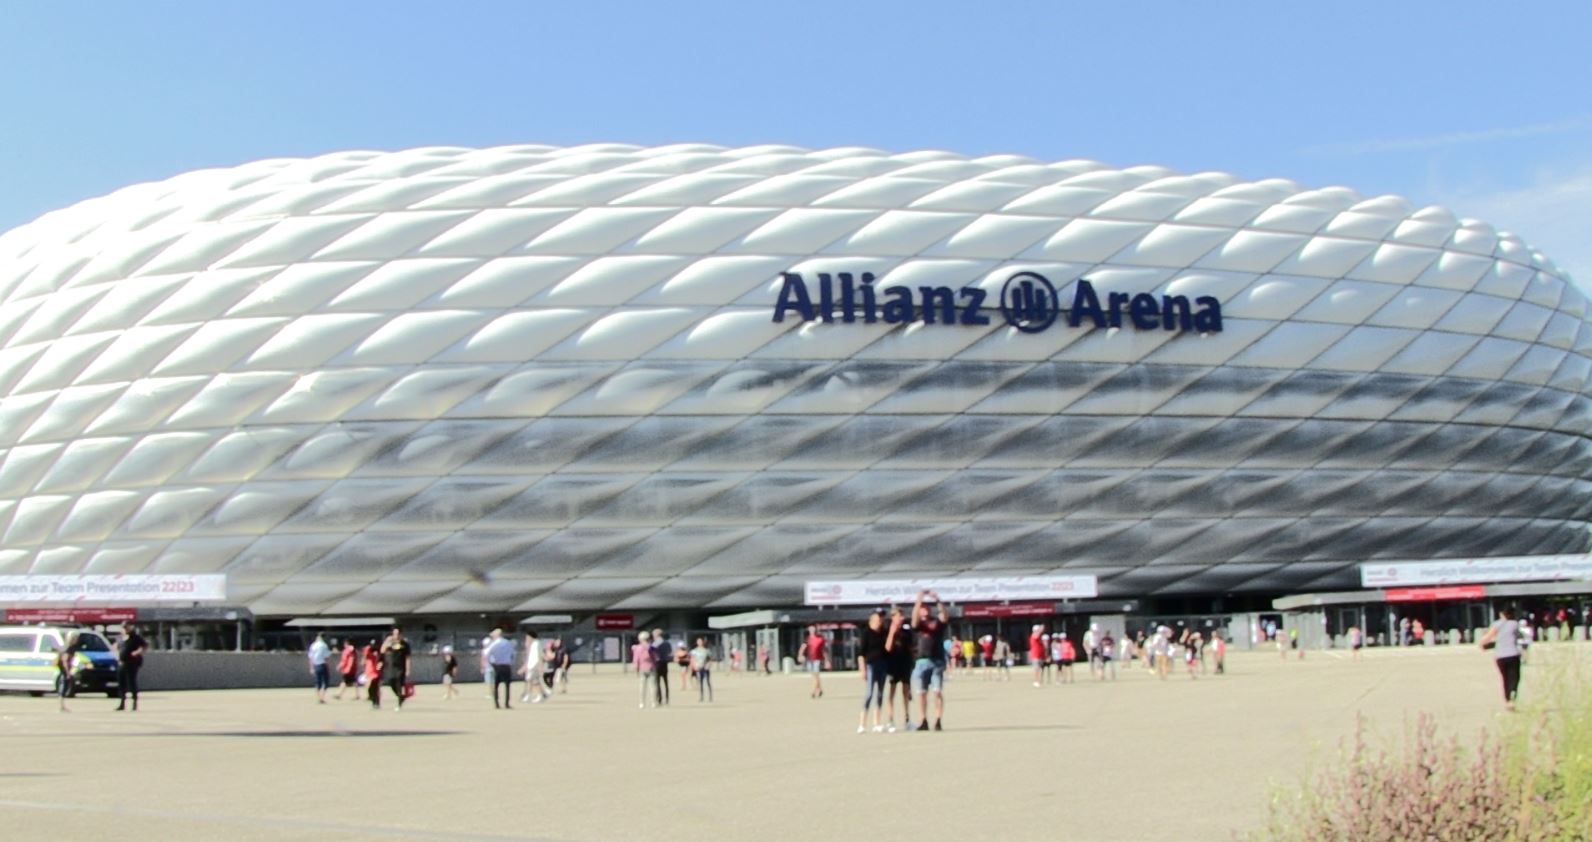 Hotels in der Nähe der Allianz Arena